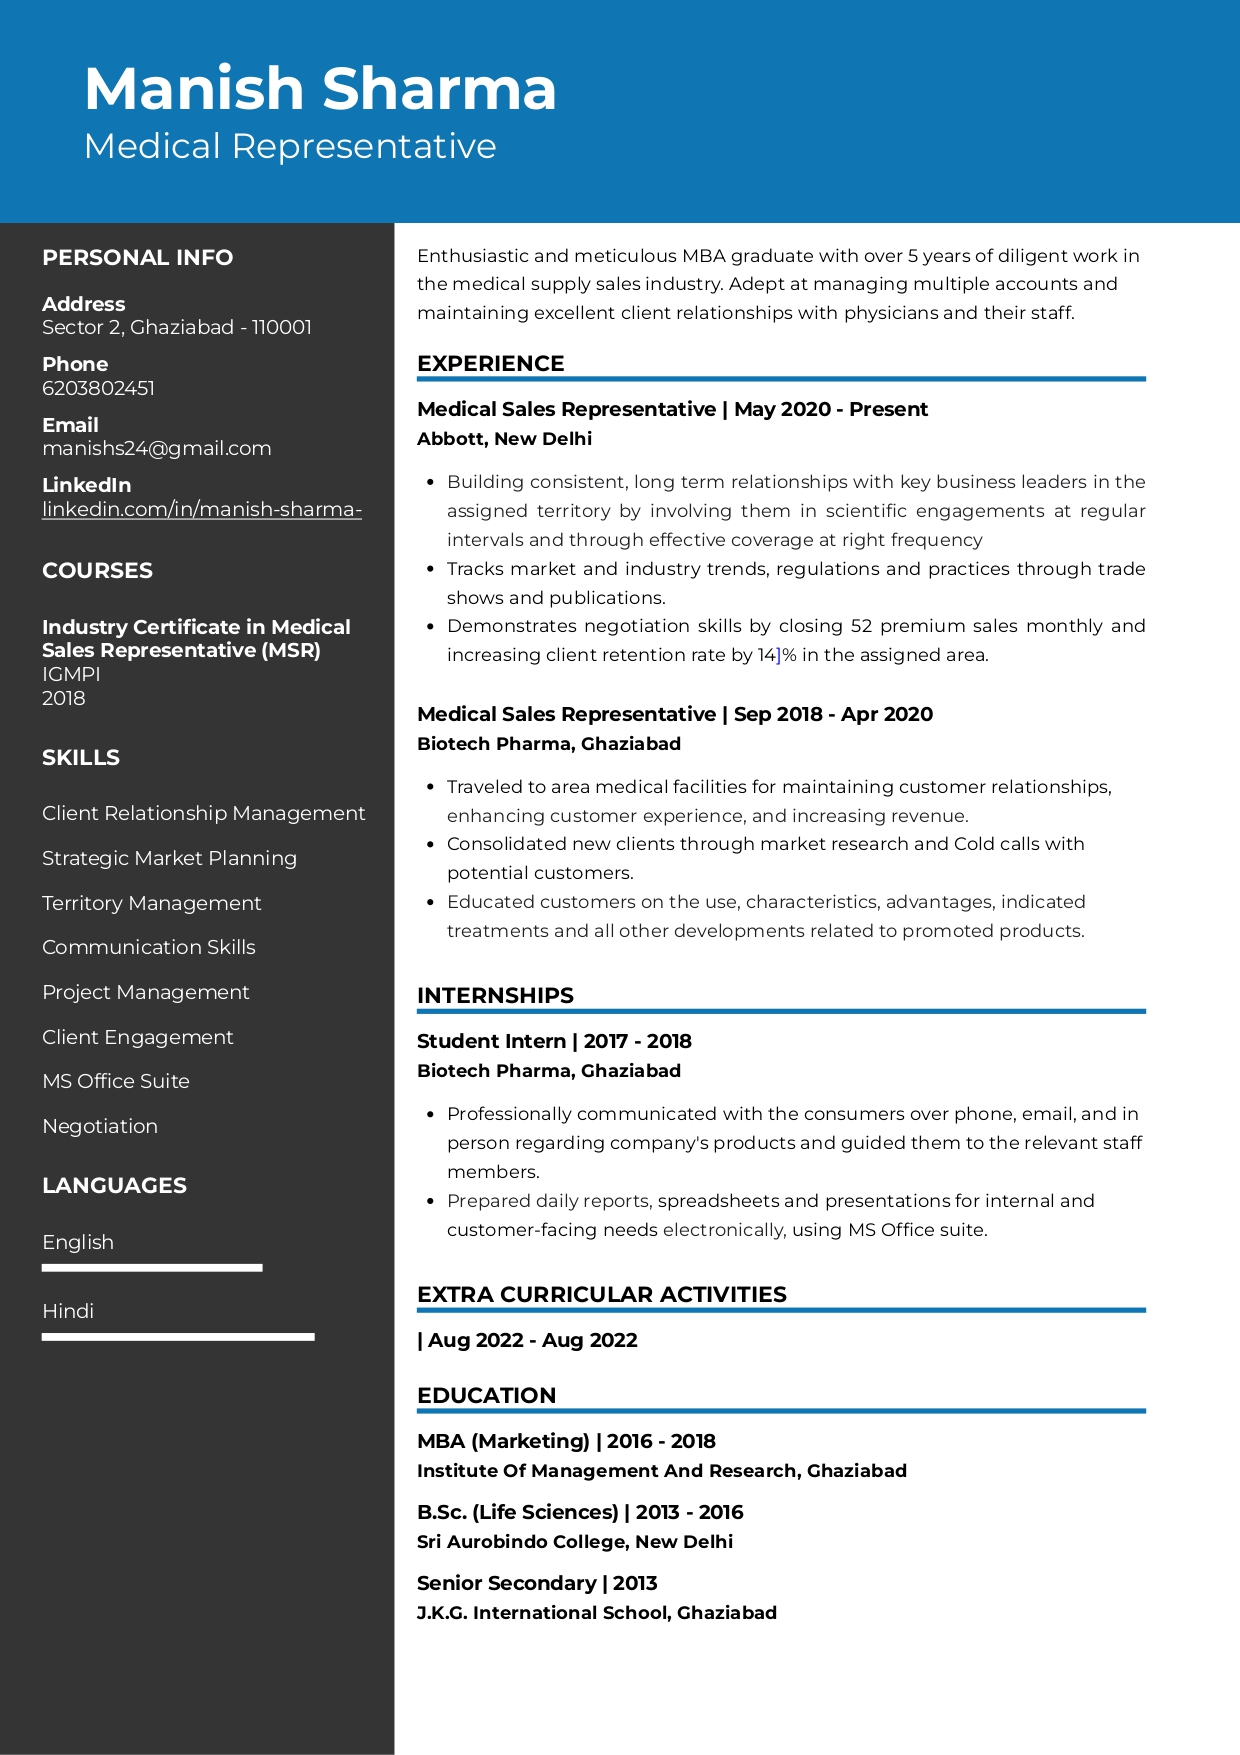 resume format for freshers pharma job